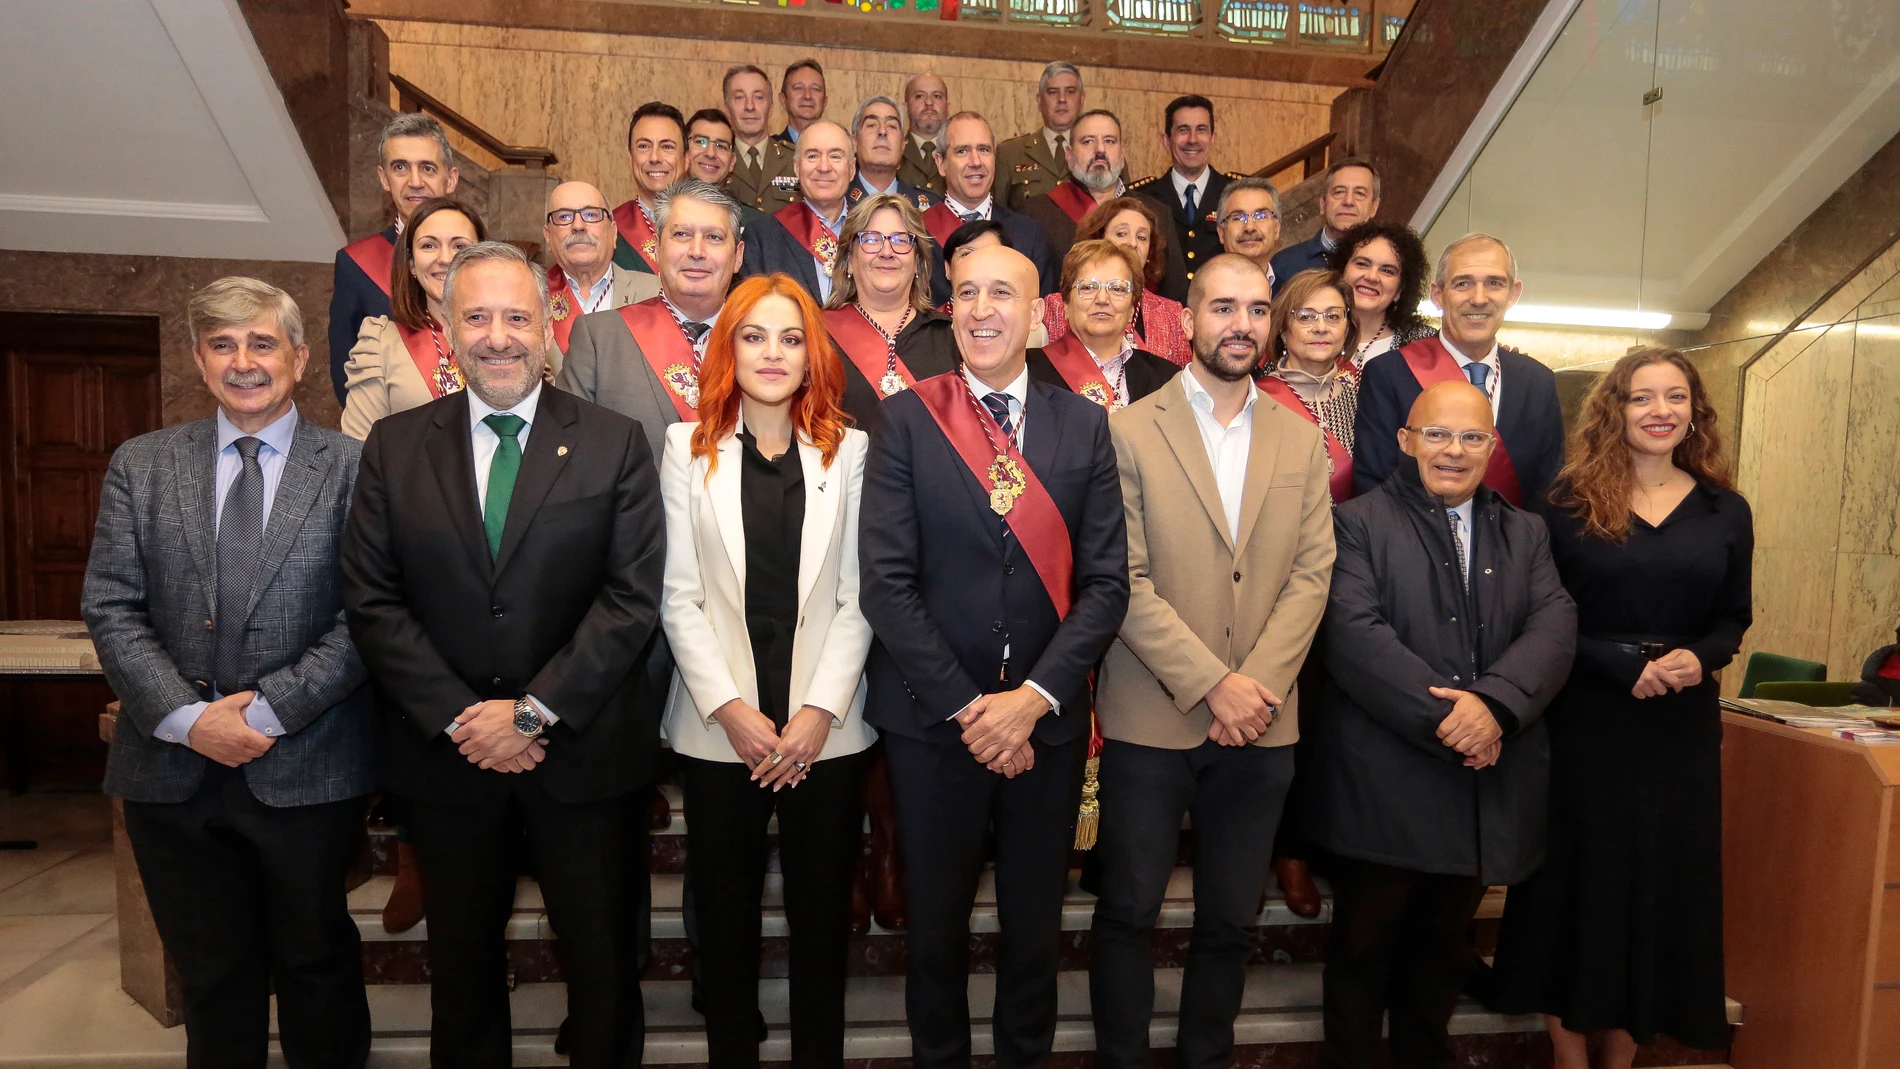 Los astronautas leoneses, Pablo Álvarez y Sara García, recientemente seleccionados por la Agencia Espacial Europea, son recibidos en el Ayuntamiento de León